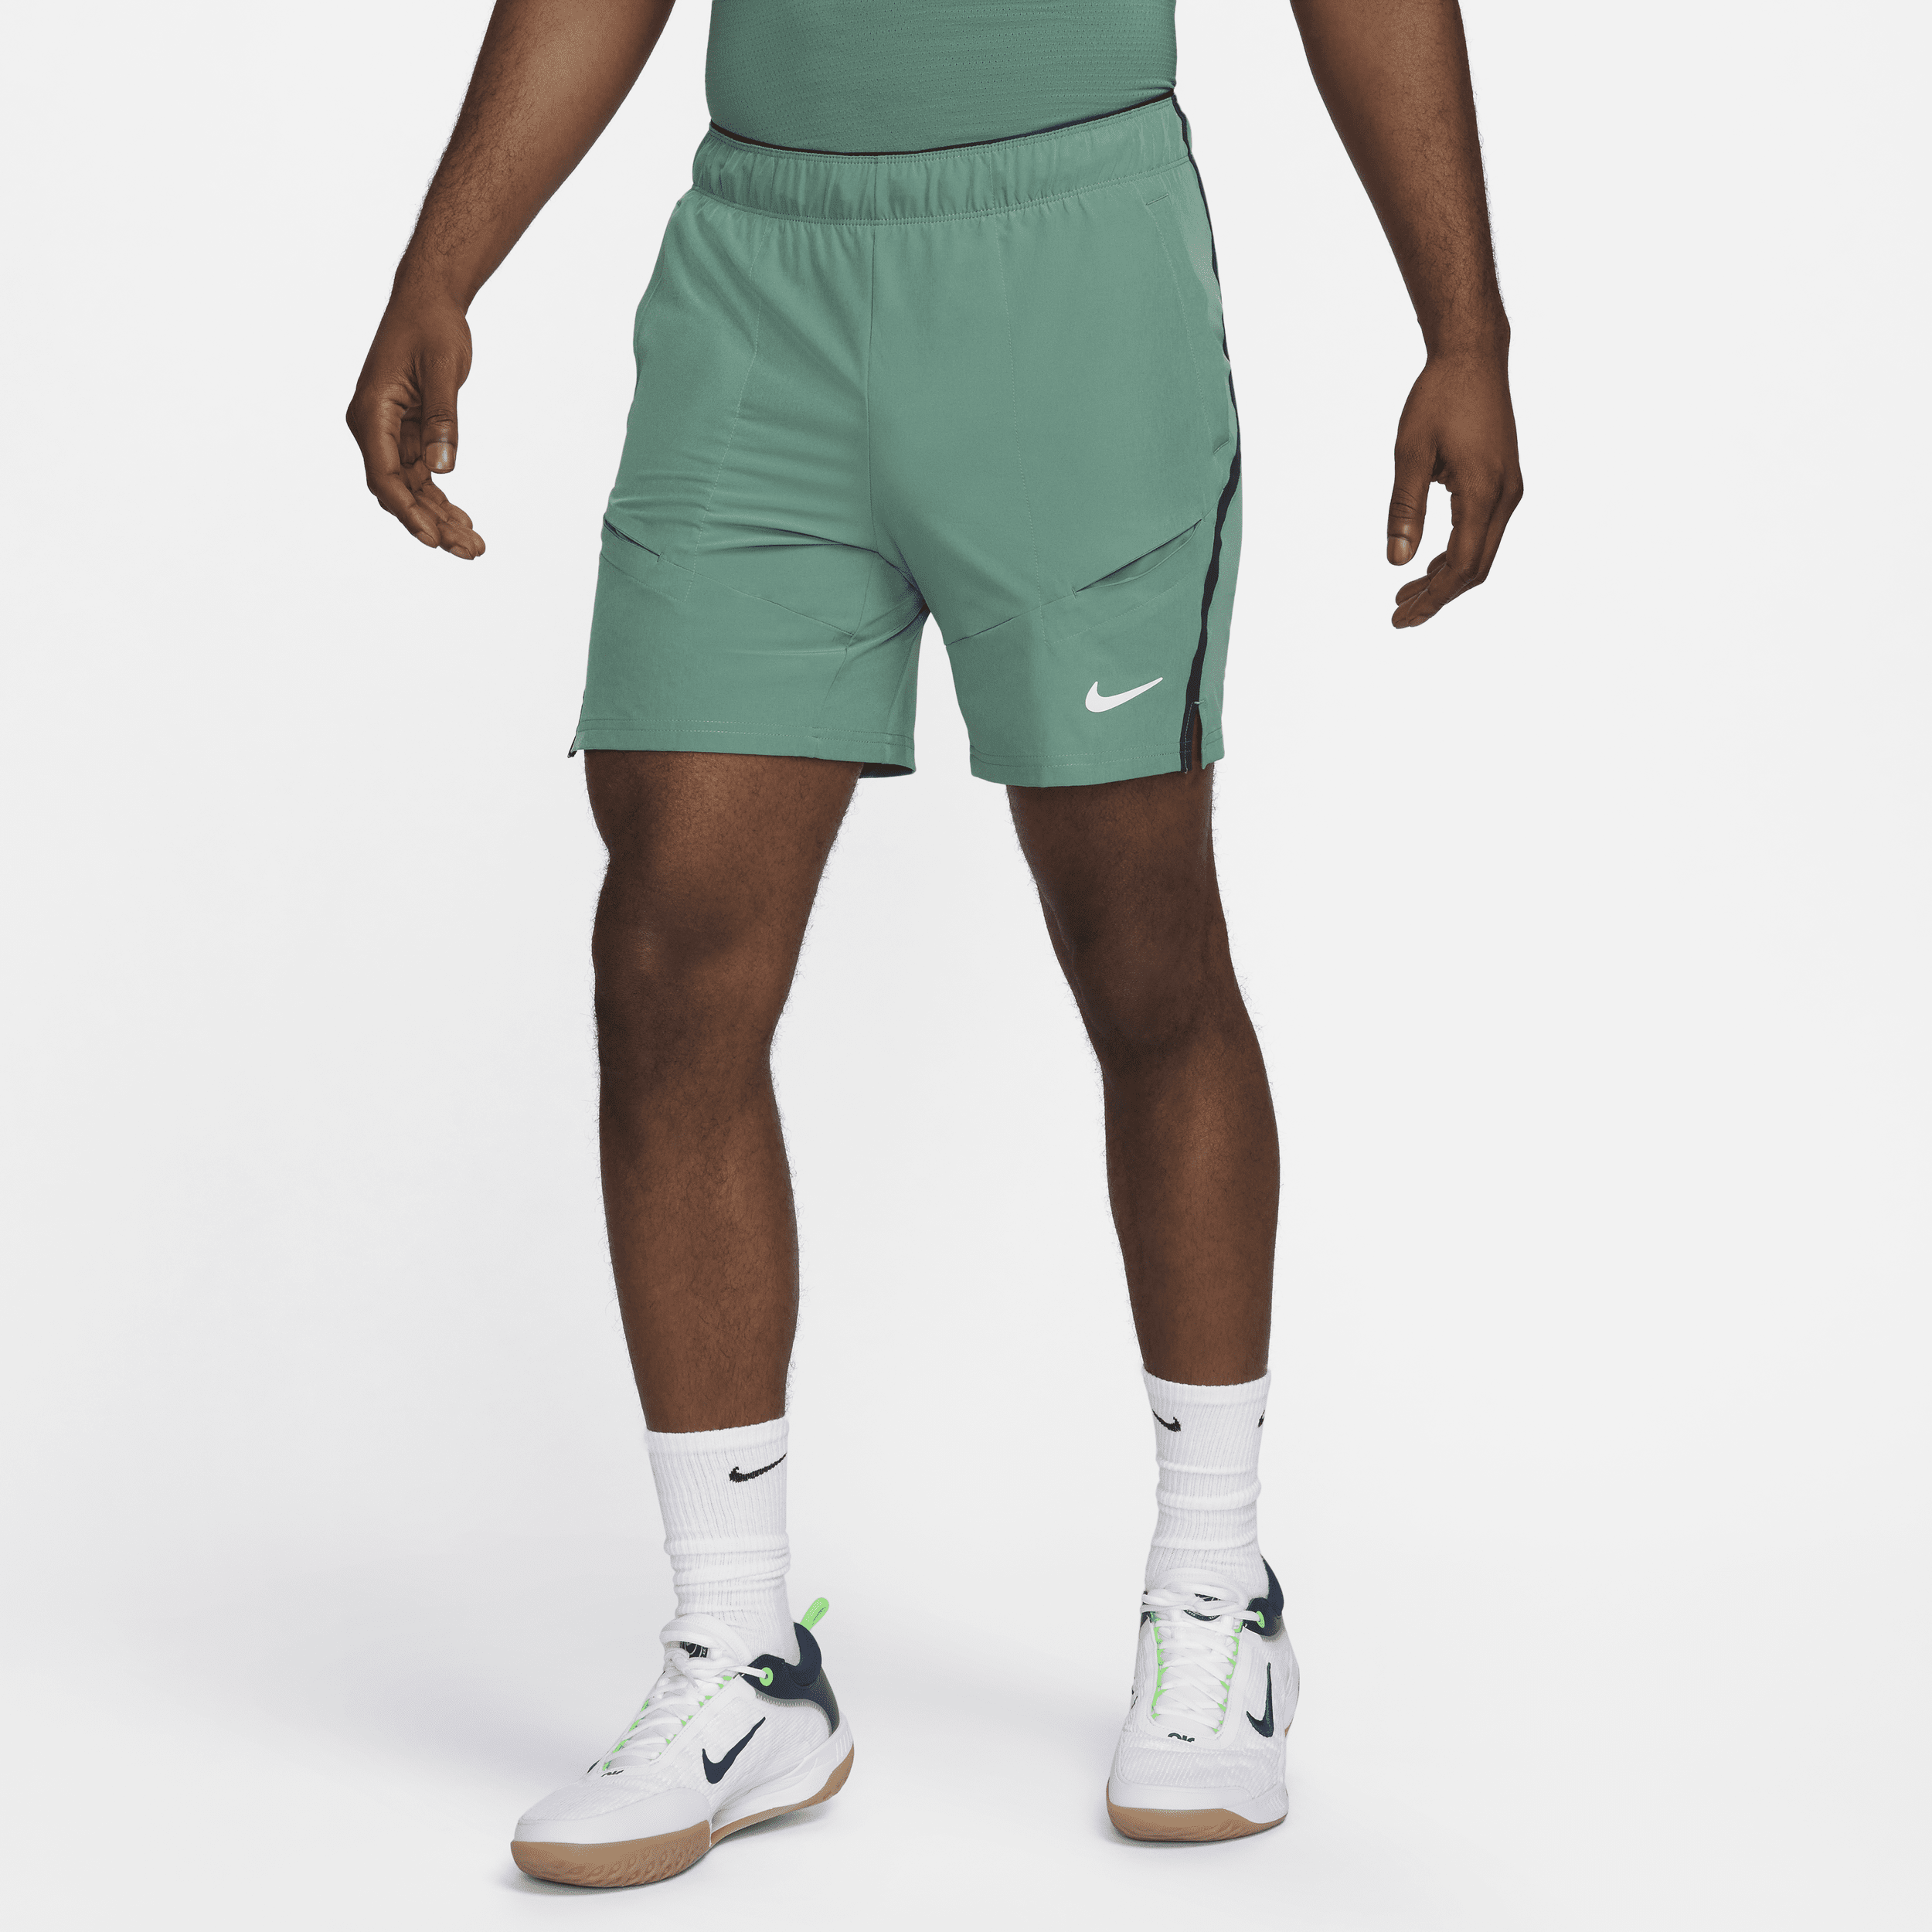 NikeCourt Advantage Pantalón corto de tenis de 18 cm Dri-FIT - Hombre - Verde